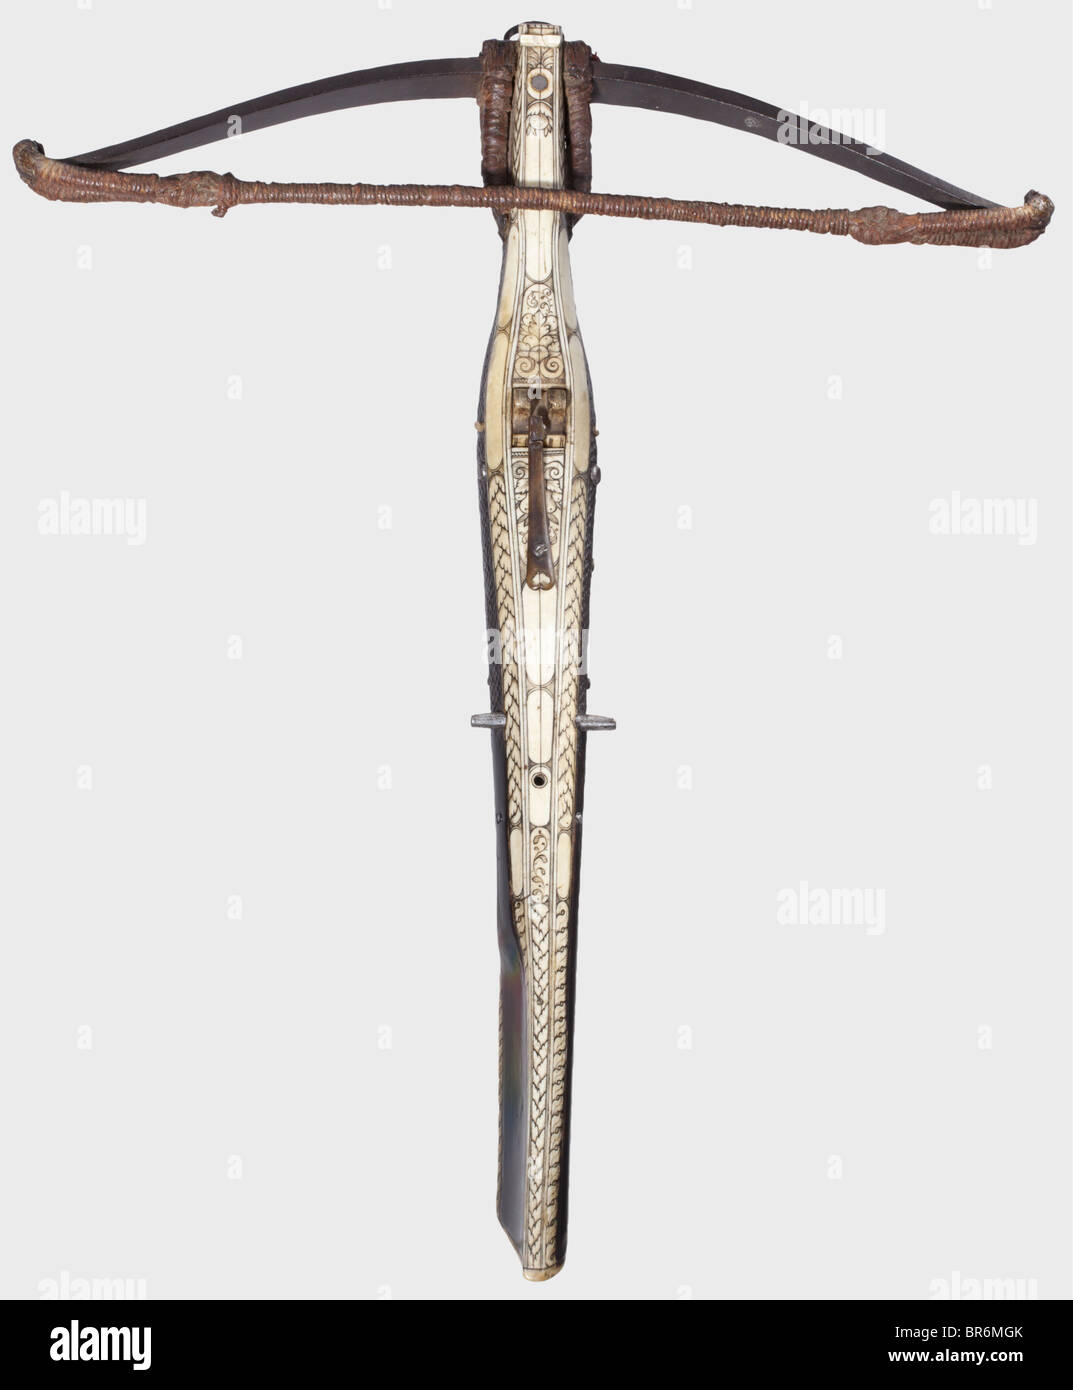 Una ballesta de caza alemán del siglo XVII, Heavy Iron prod con un cordón y  borlas de lana tejida, posteriormente el cáñamo bowstring, retenido por los  cordones. Ligeramente abultado lanza con tallados